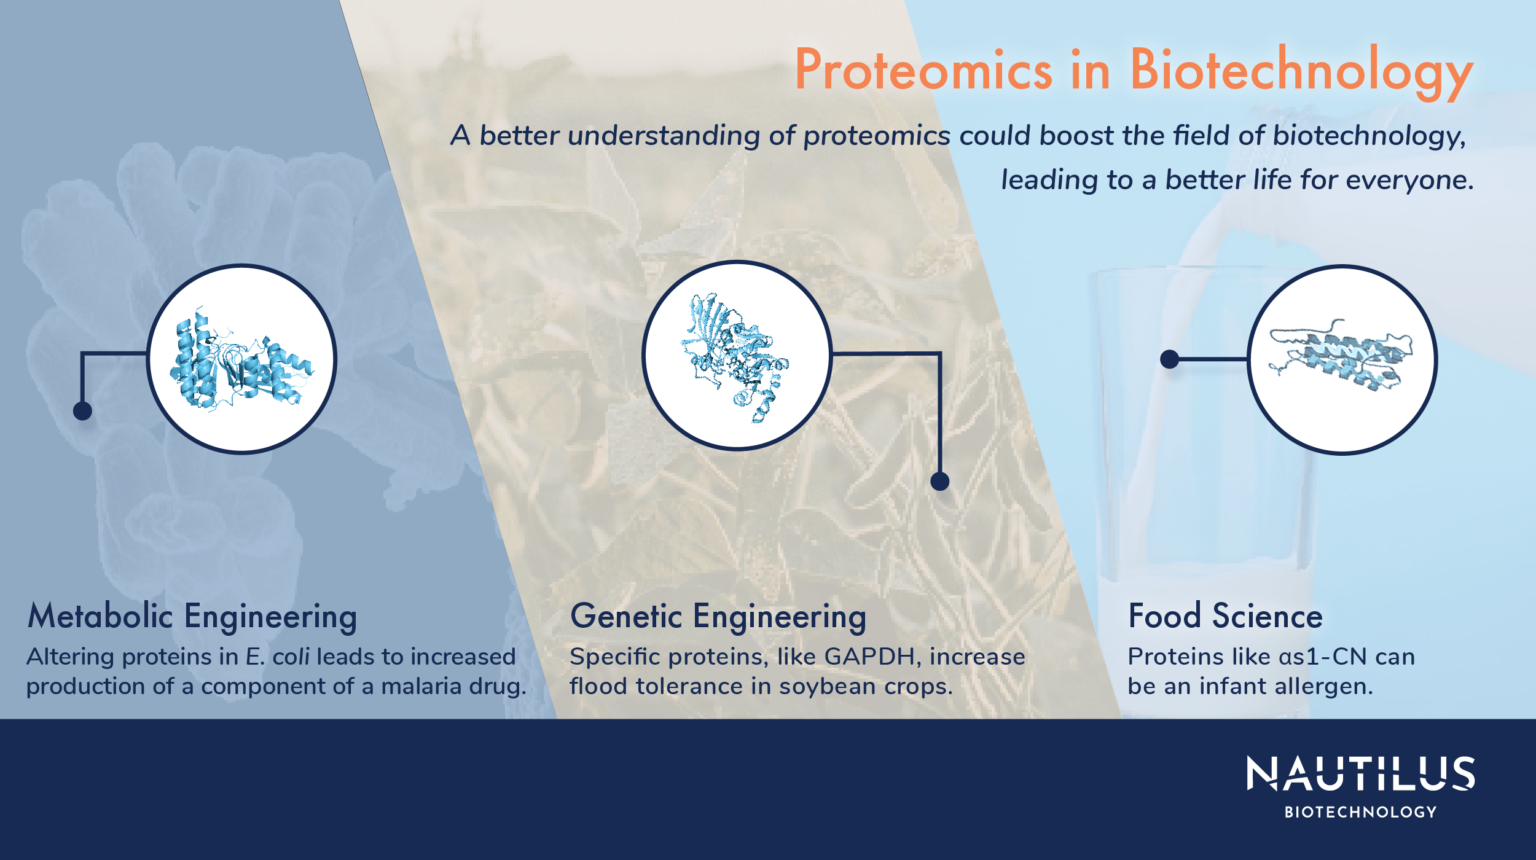 Applications of proteomics Biotechnology Nautilus Biotechnology